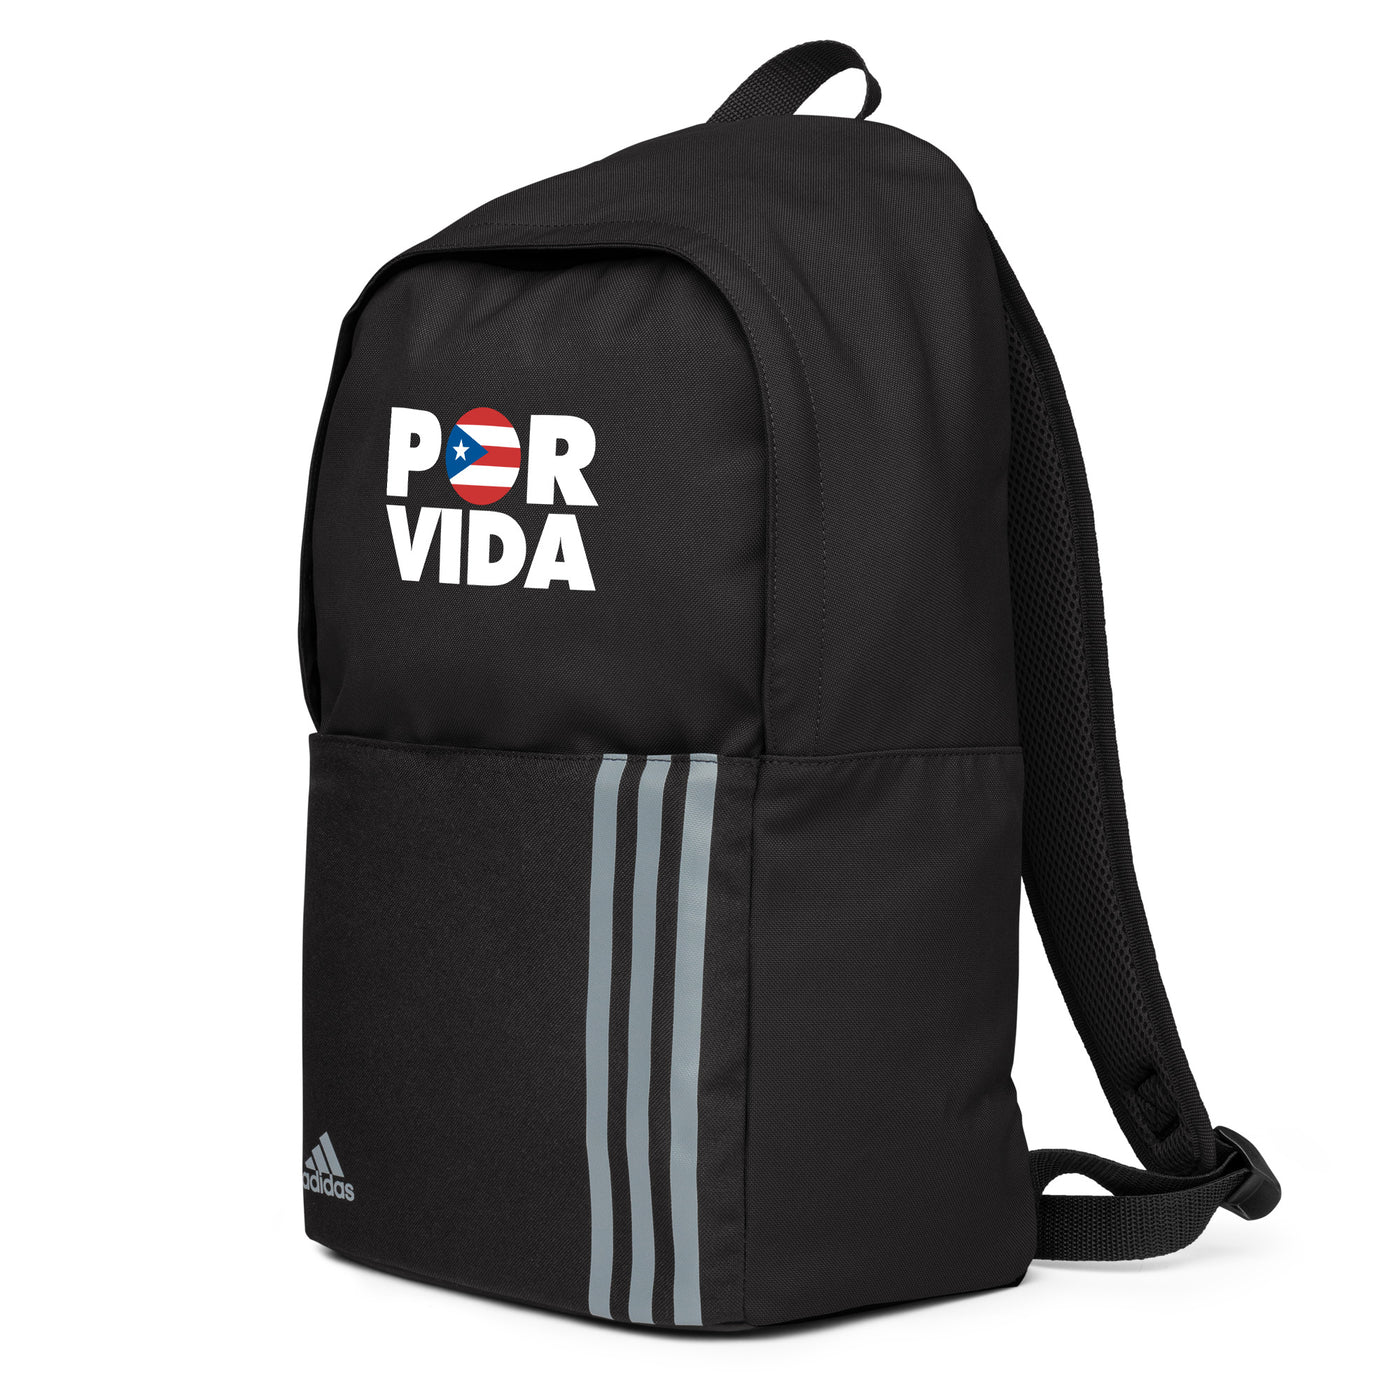 POR VIDA Puerto Rico adidas backpack